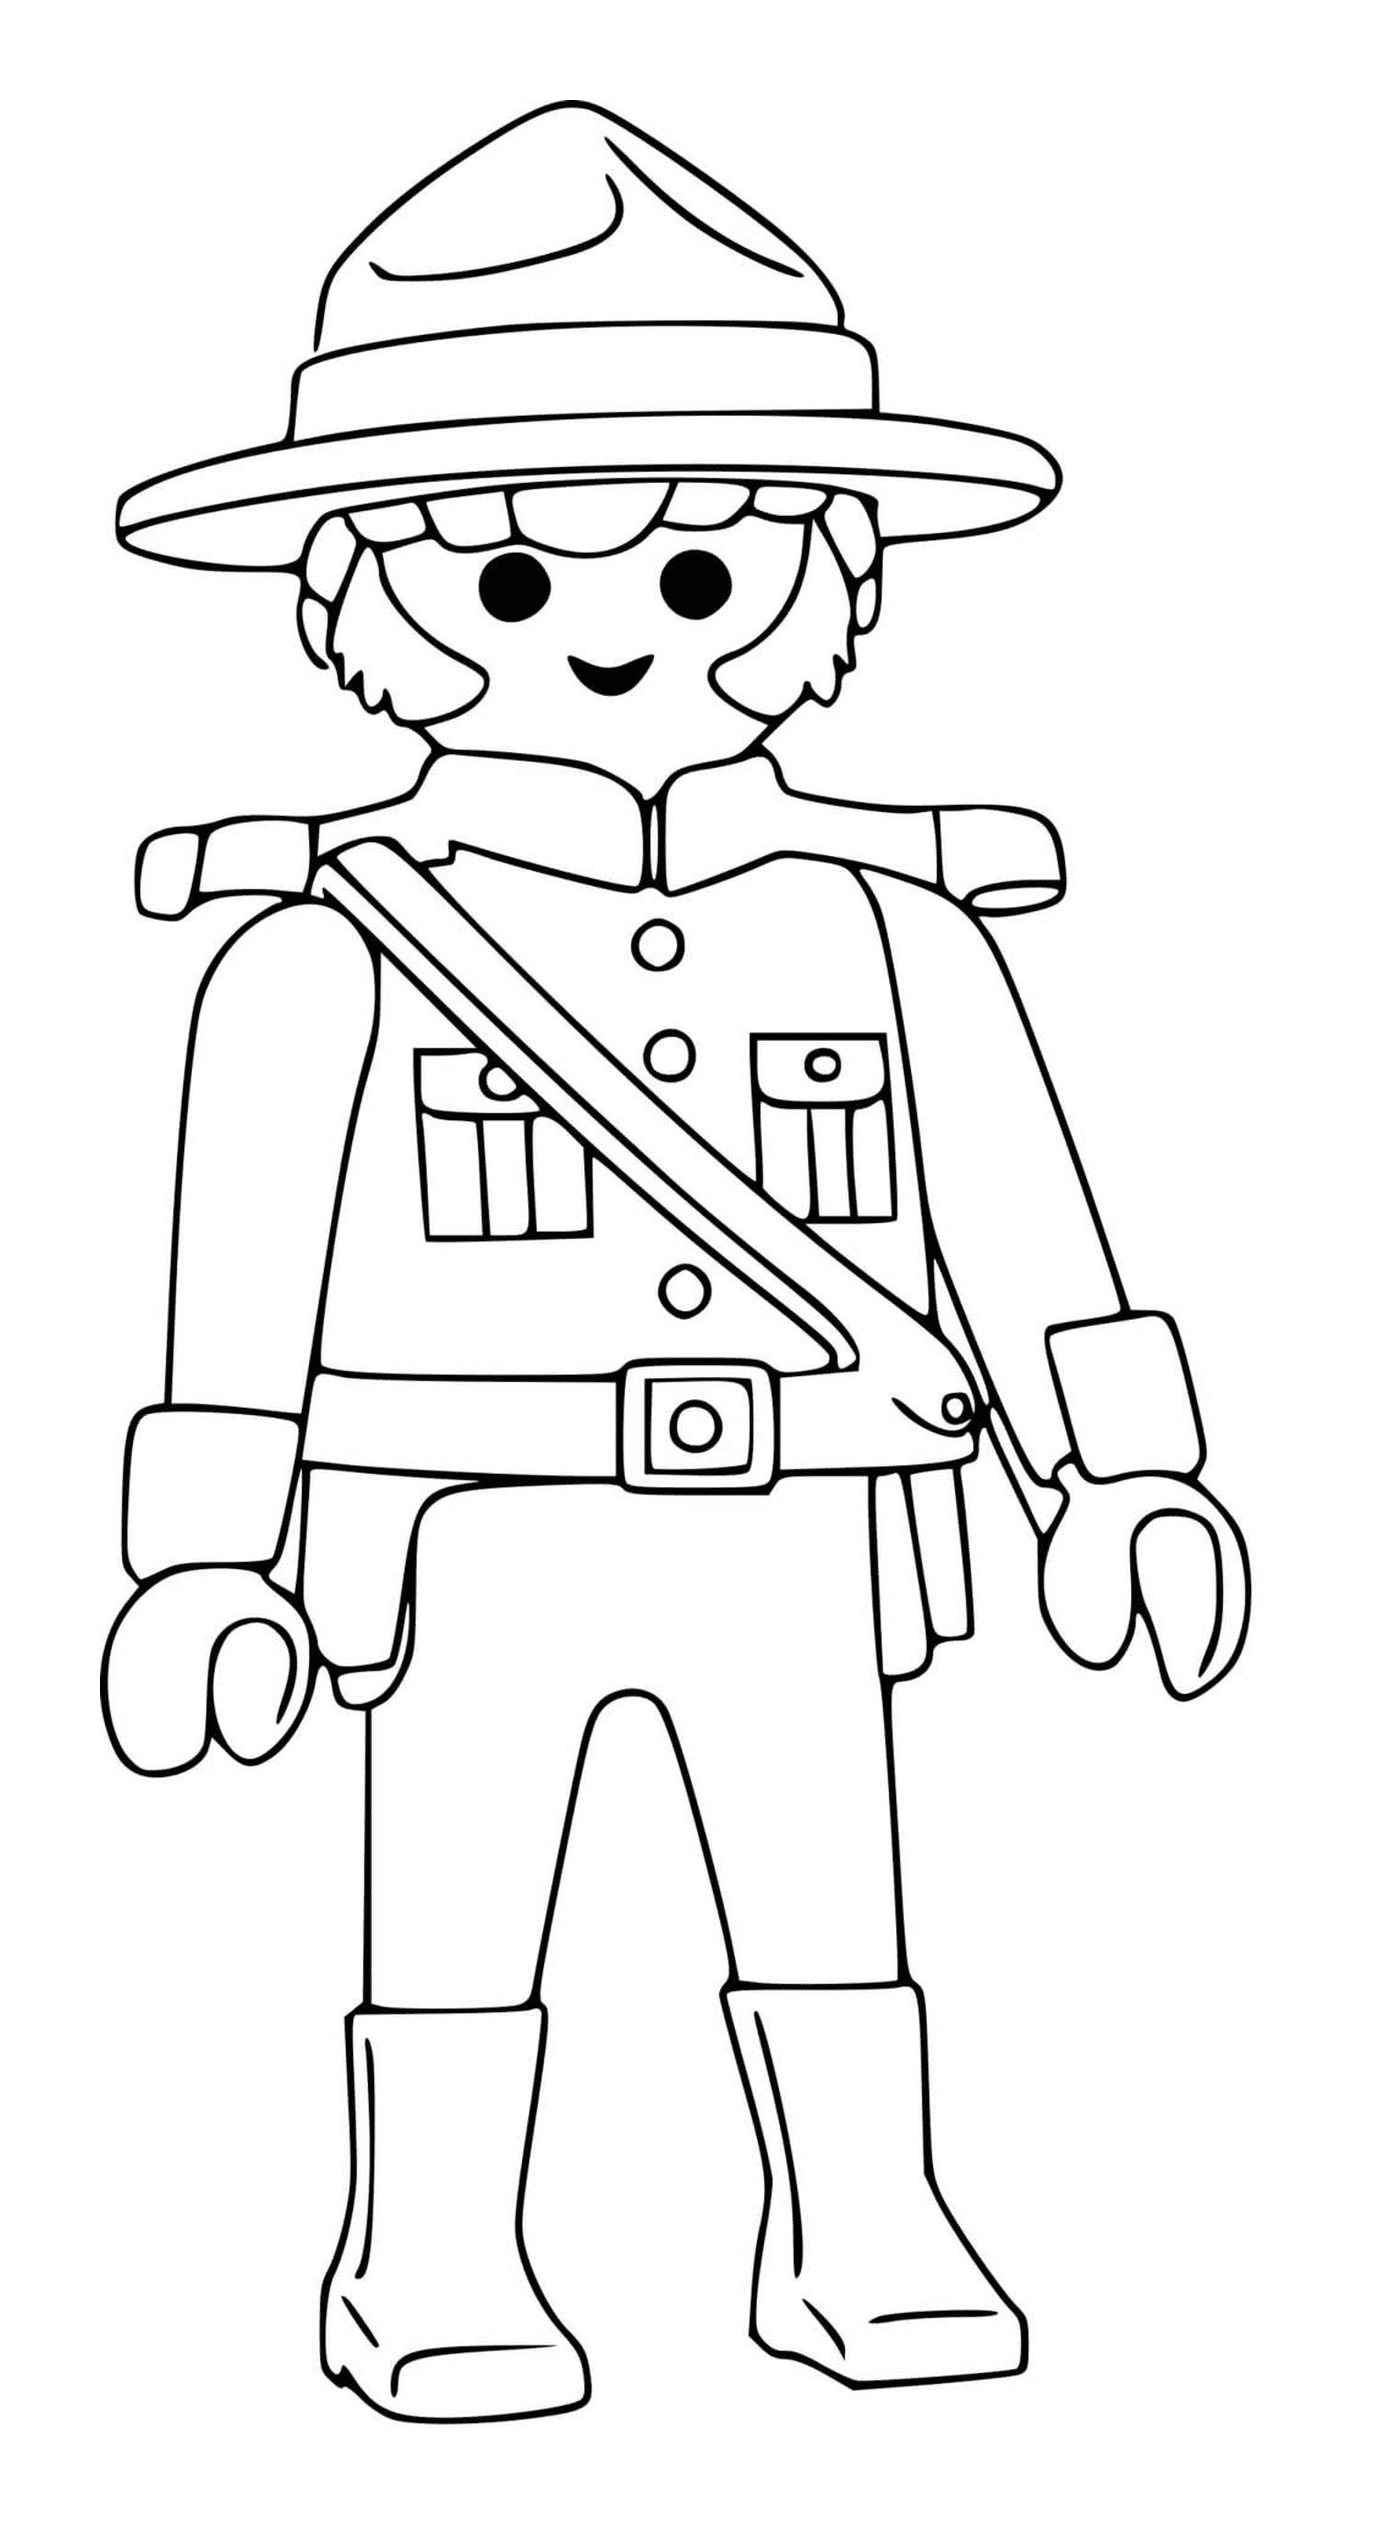  Personagem Playmobil : Oficial de polícia canadense 